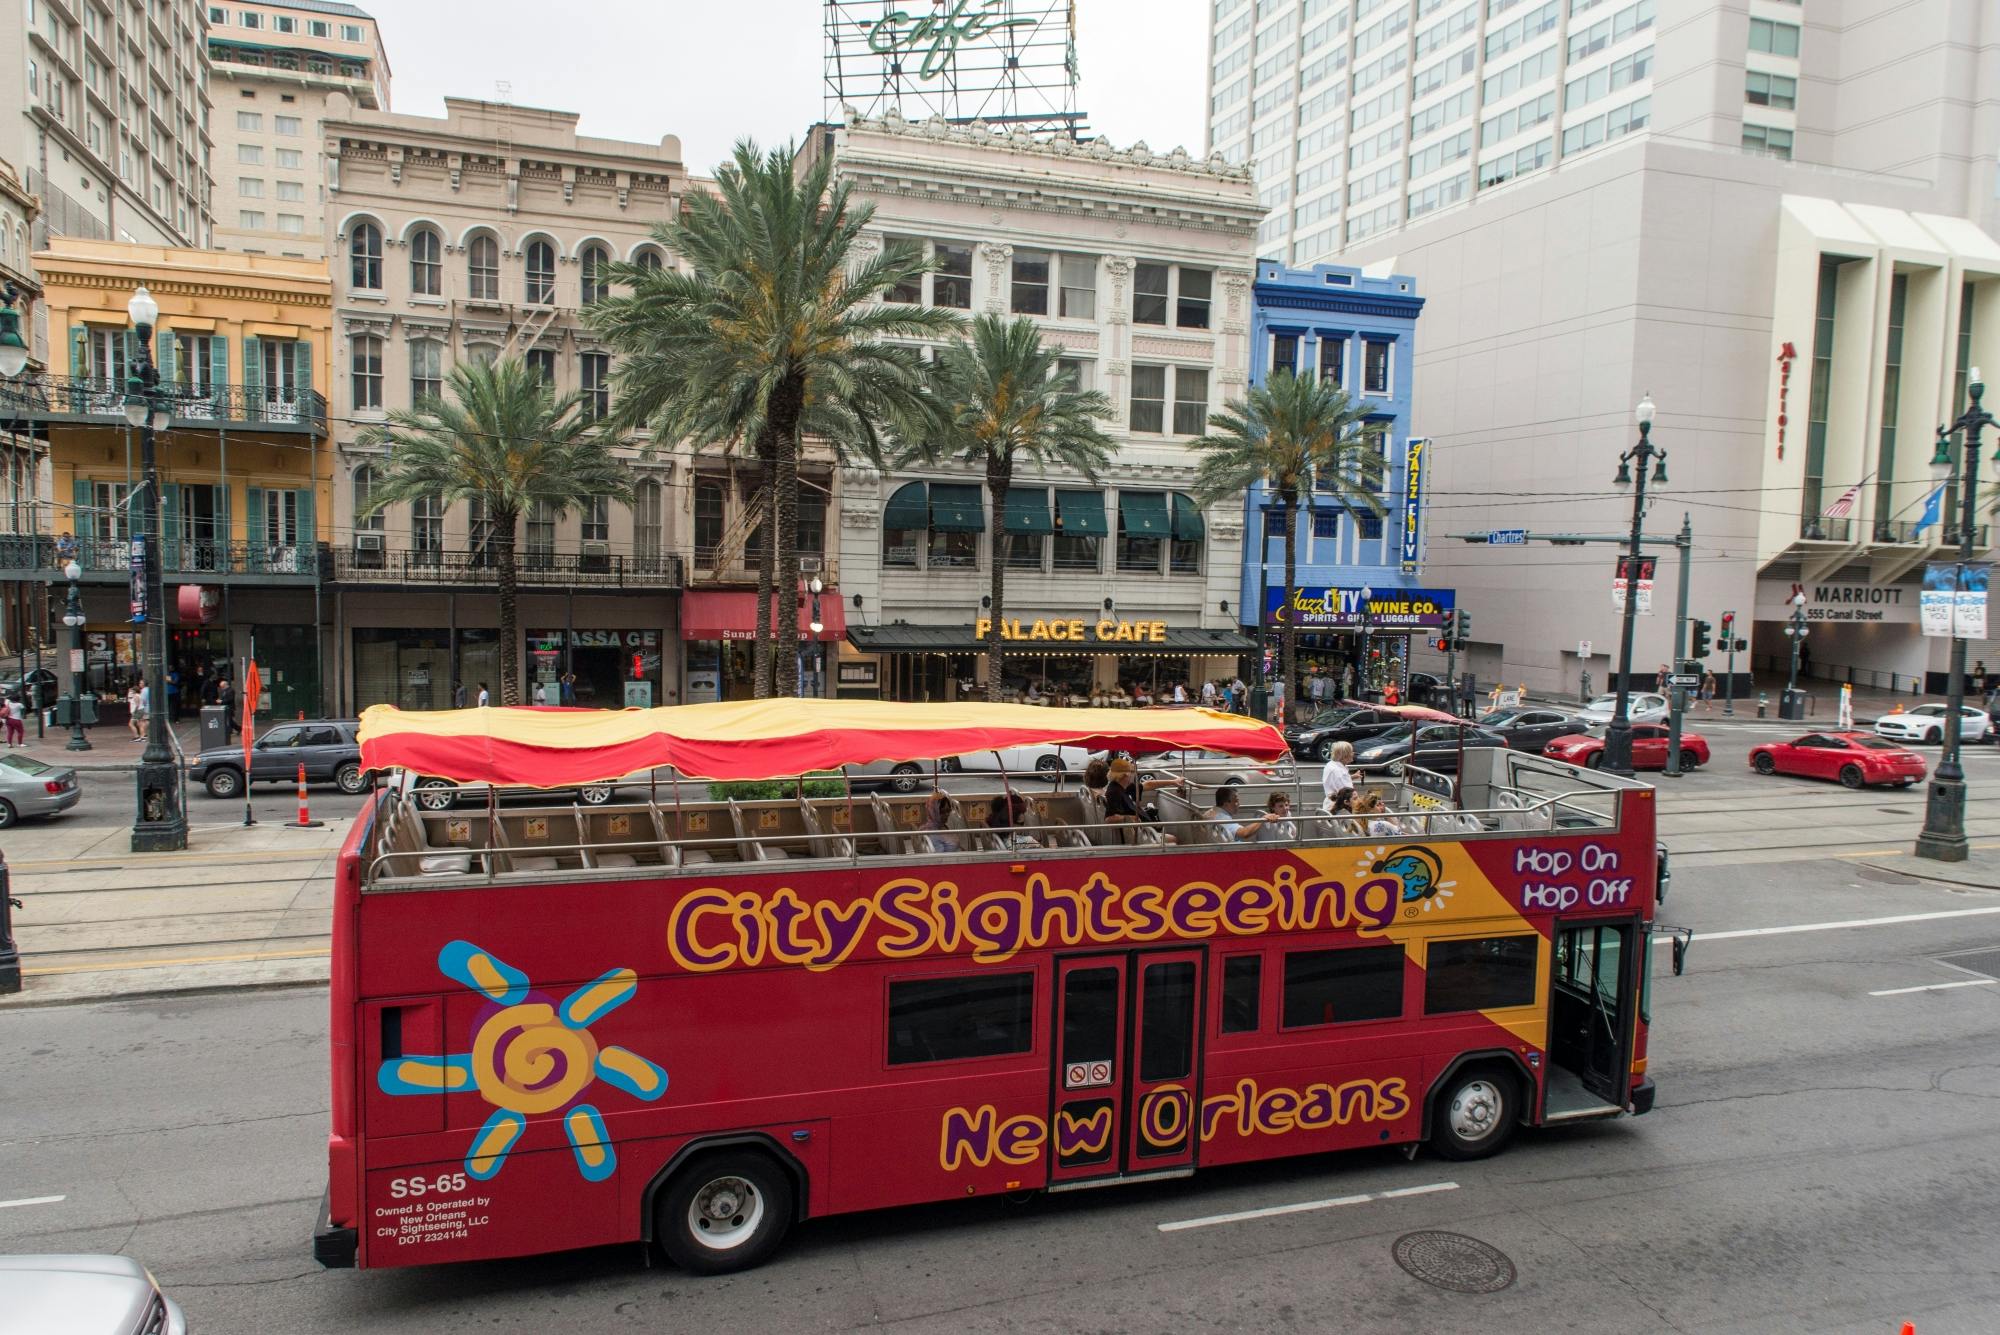 Excursão turística em ônibus hop-on hop-off pela cidade de Nova Orleans